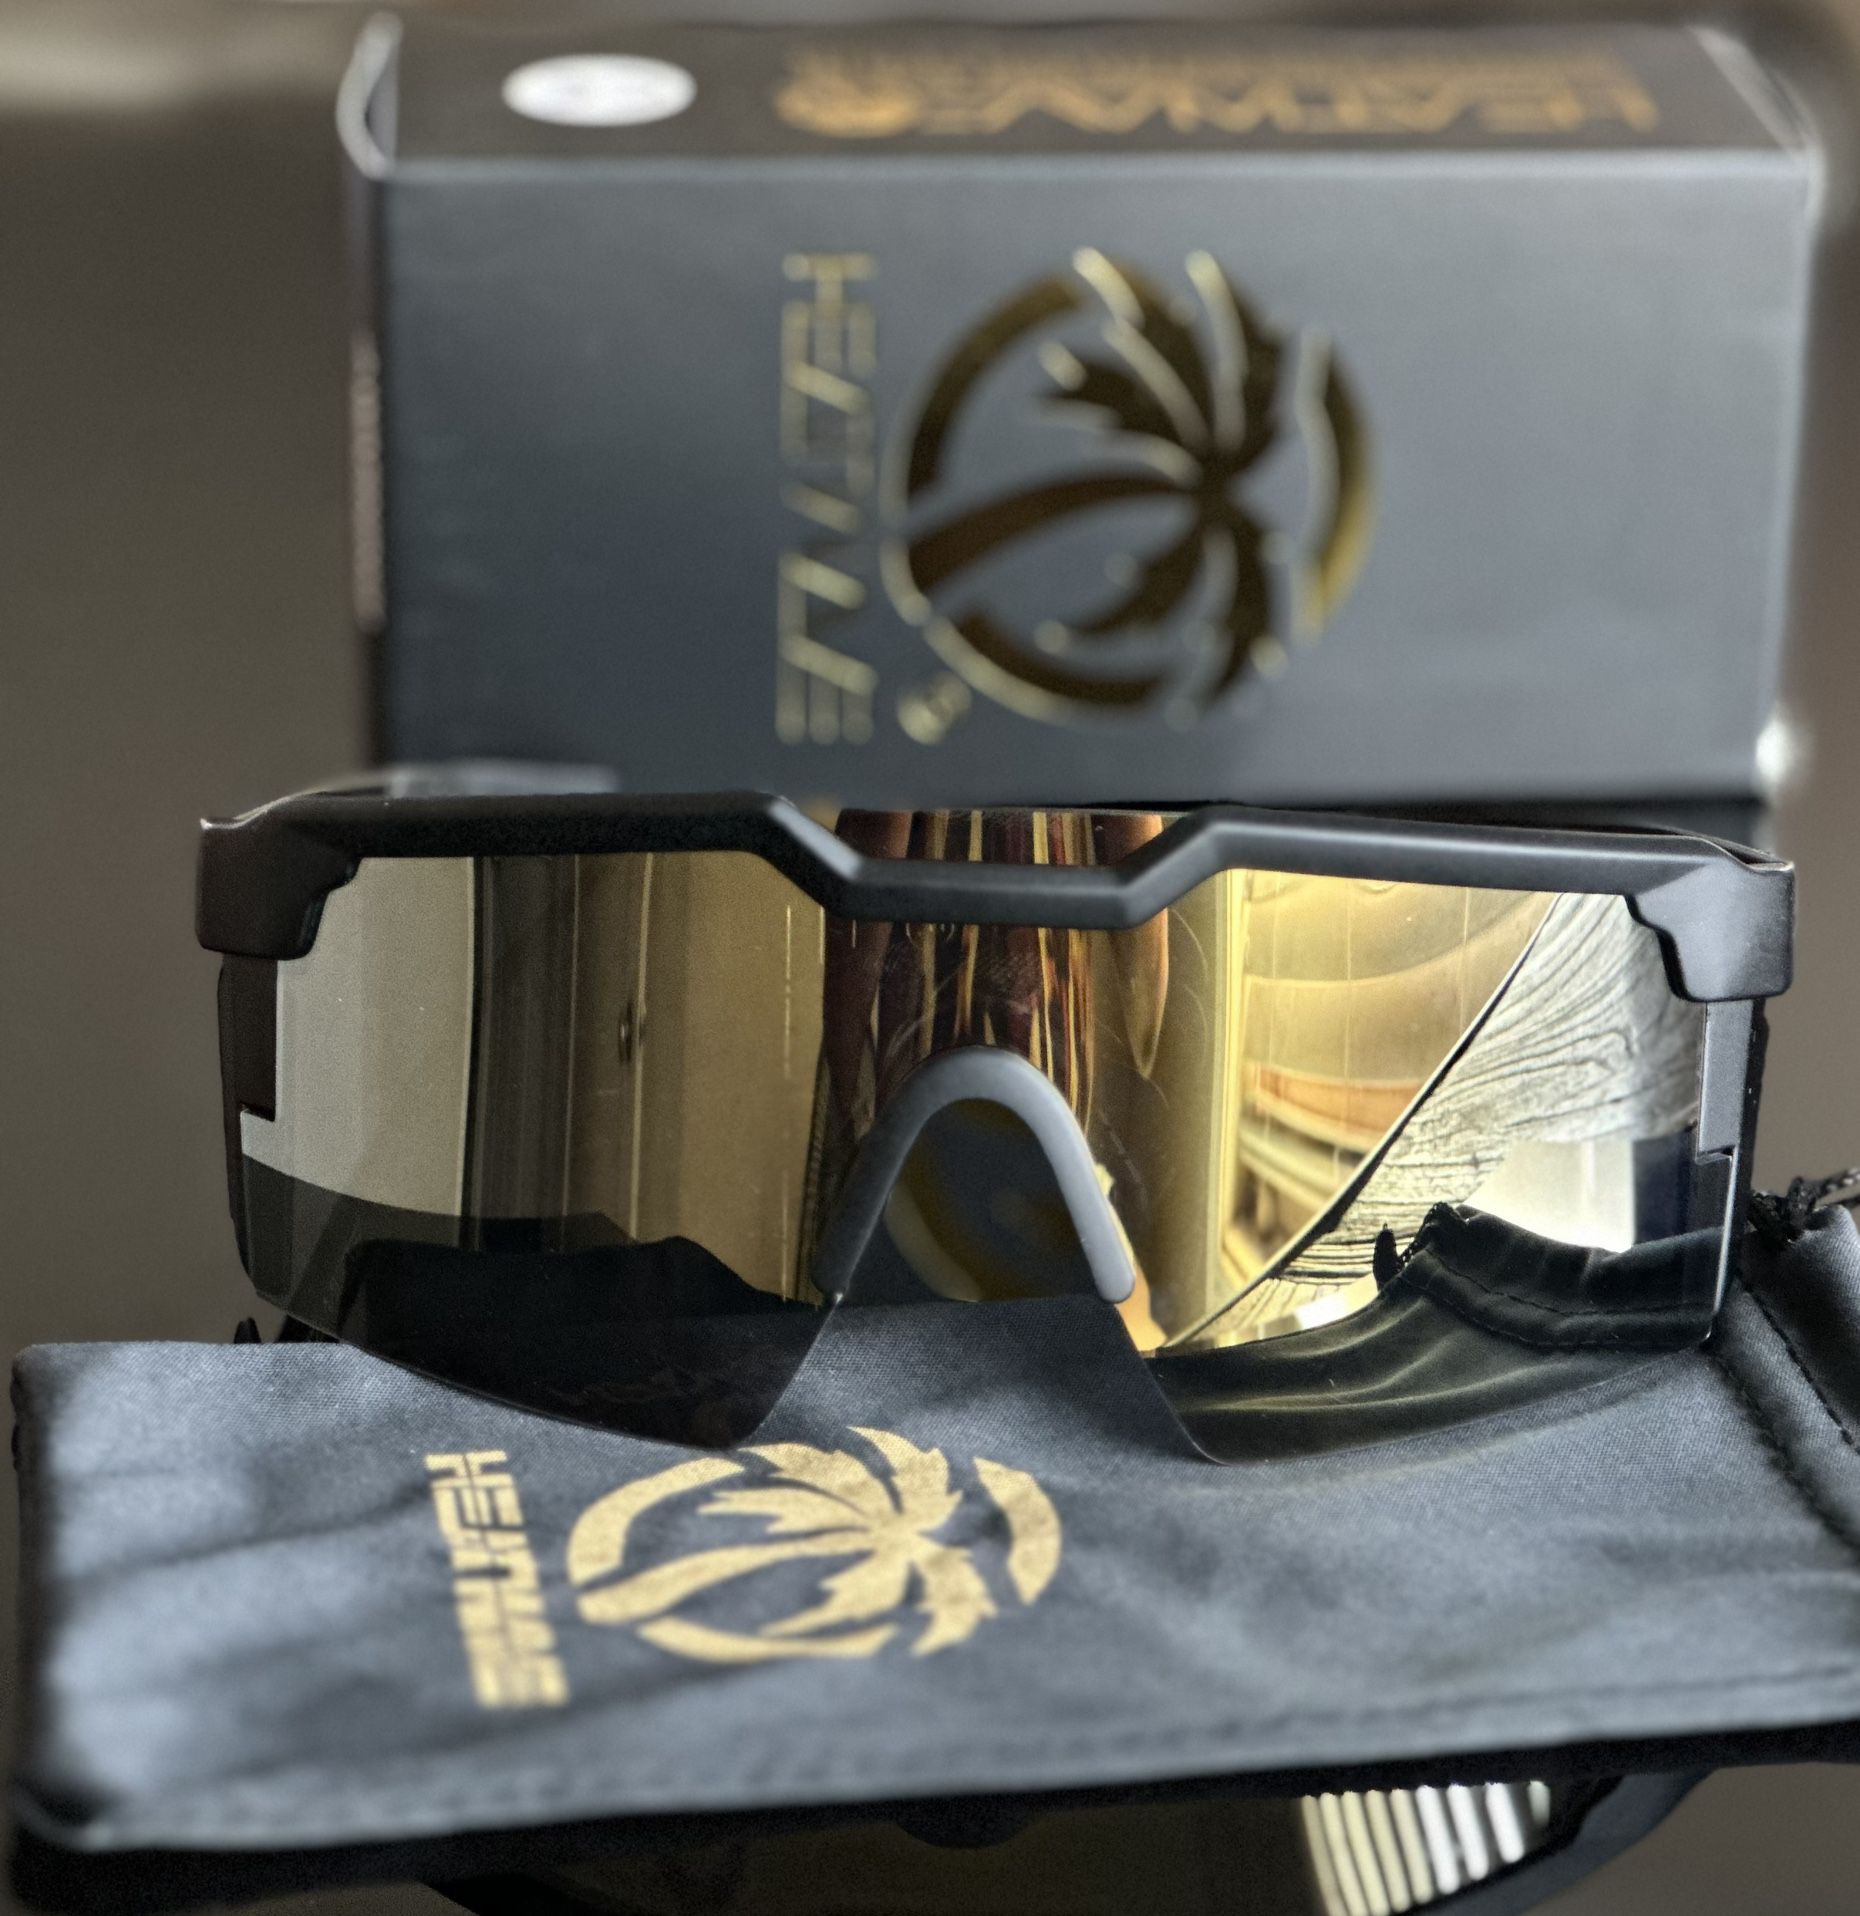 Heatwave Sunglasses Z87 Gold Lense